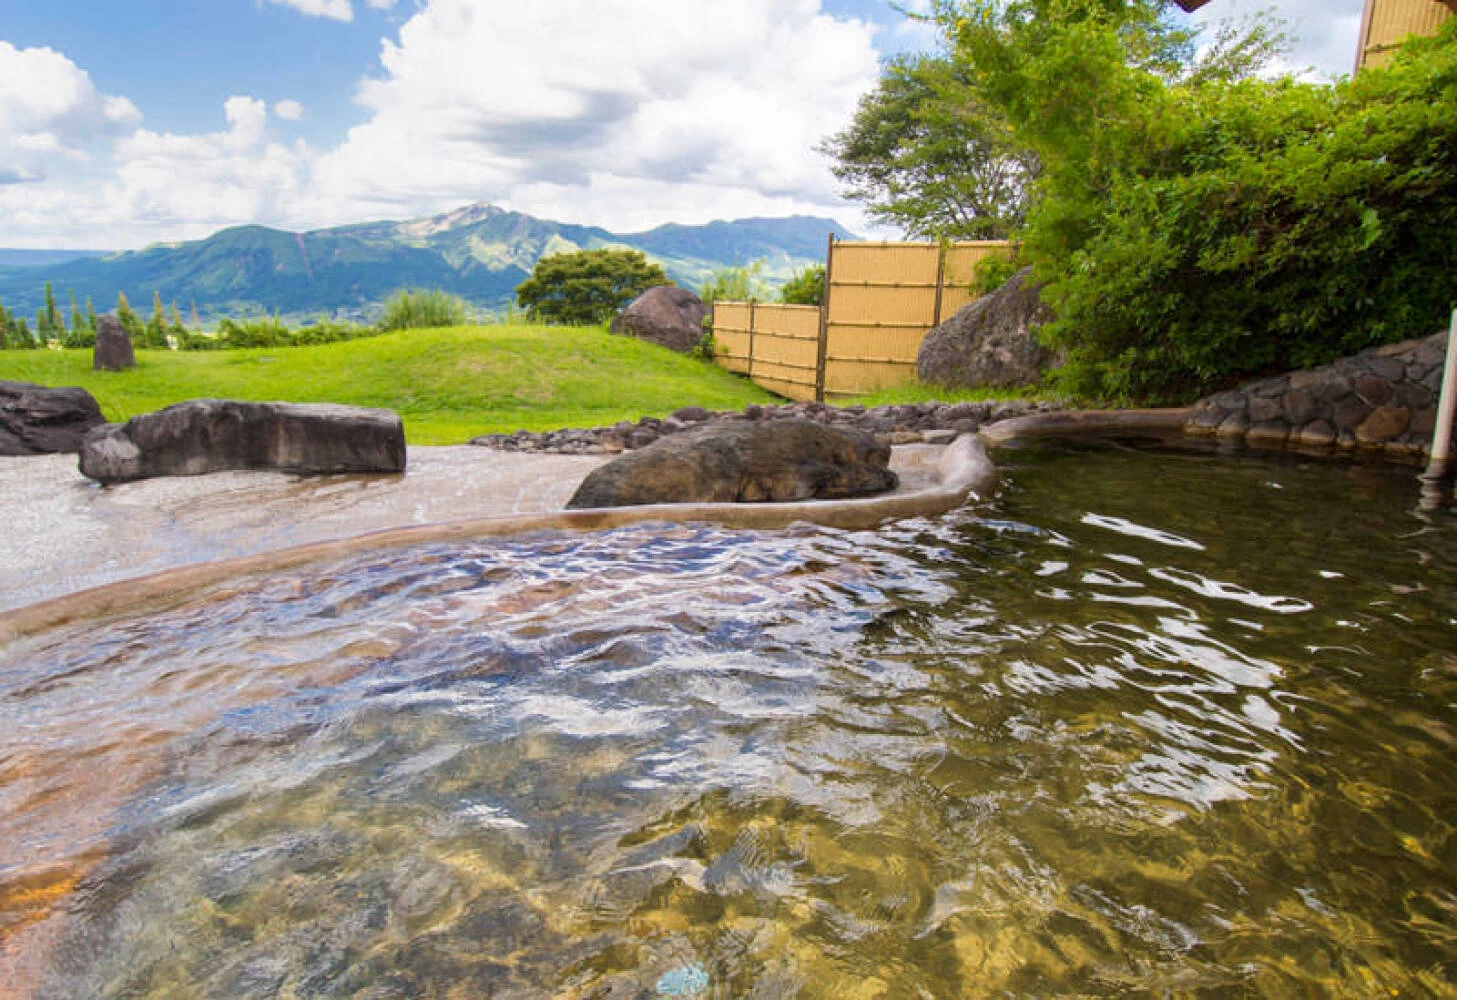 阿蘇五岳を望む絶景の温泉露天風呂